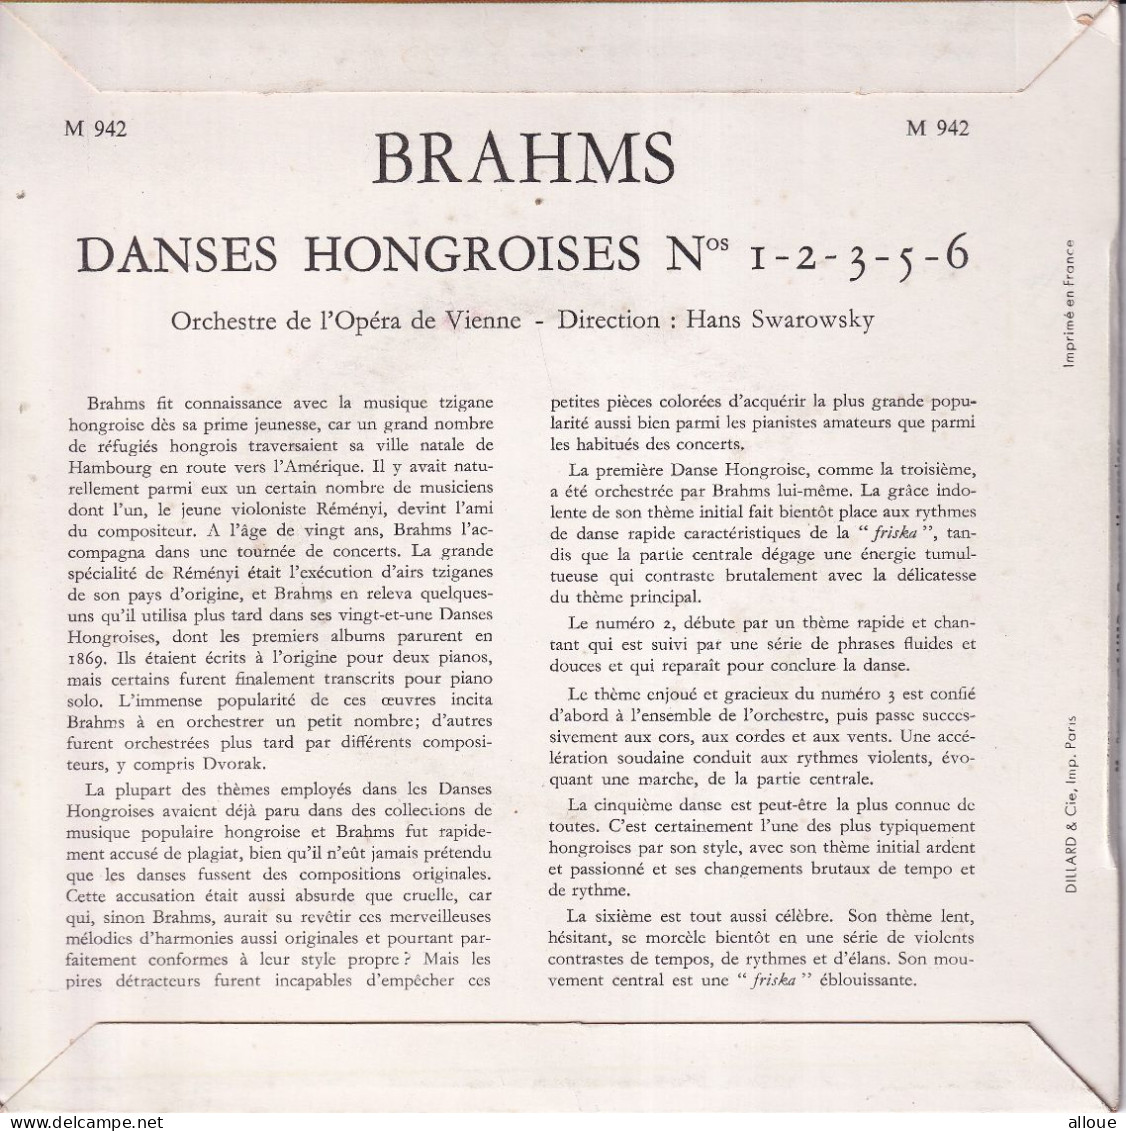 ORCHESTRE DE L'OPERA DE VIENNE - DIRECTION HANS SWAROWSKY - FR EP - BRAHMS - DANCES HONGROISES - Classica